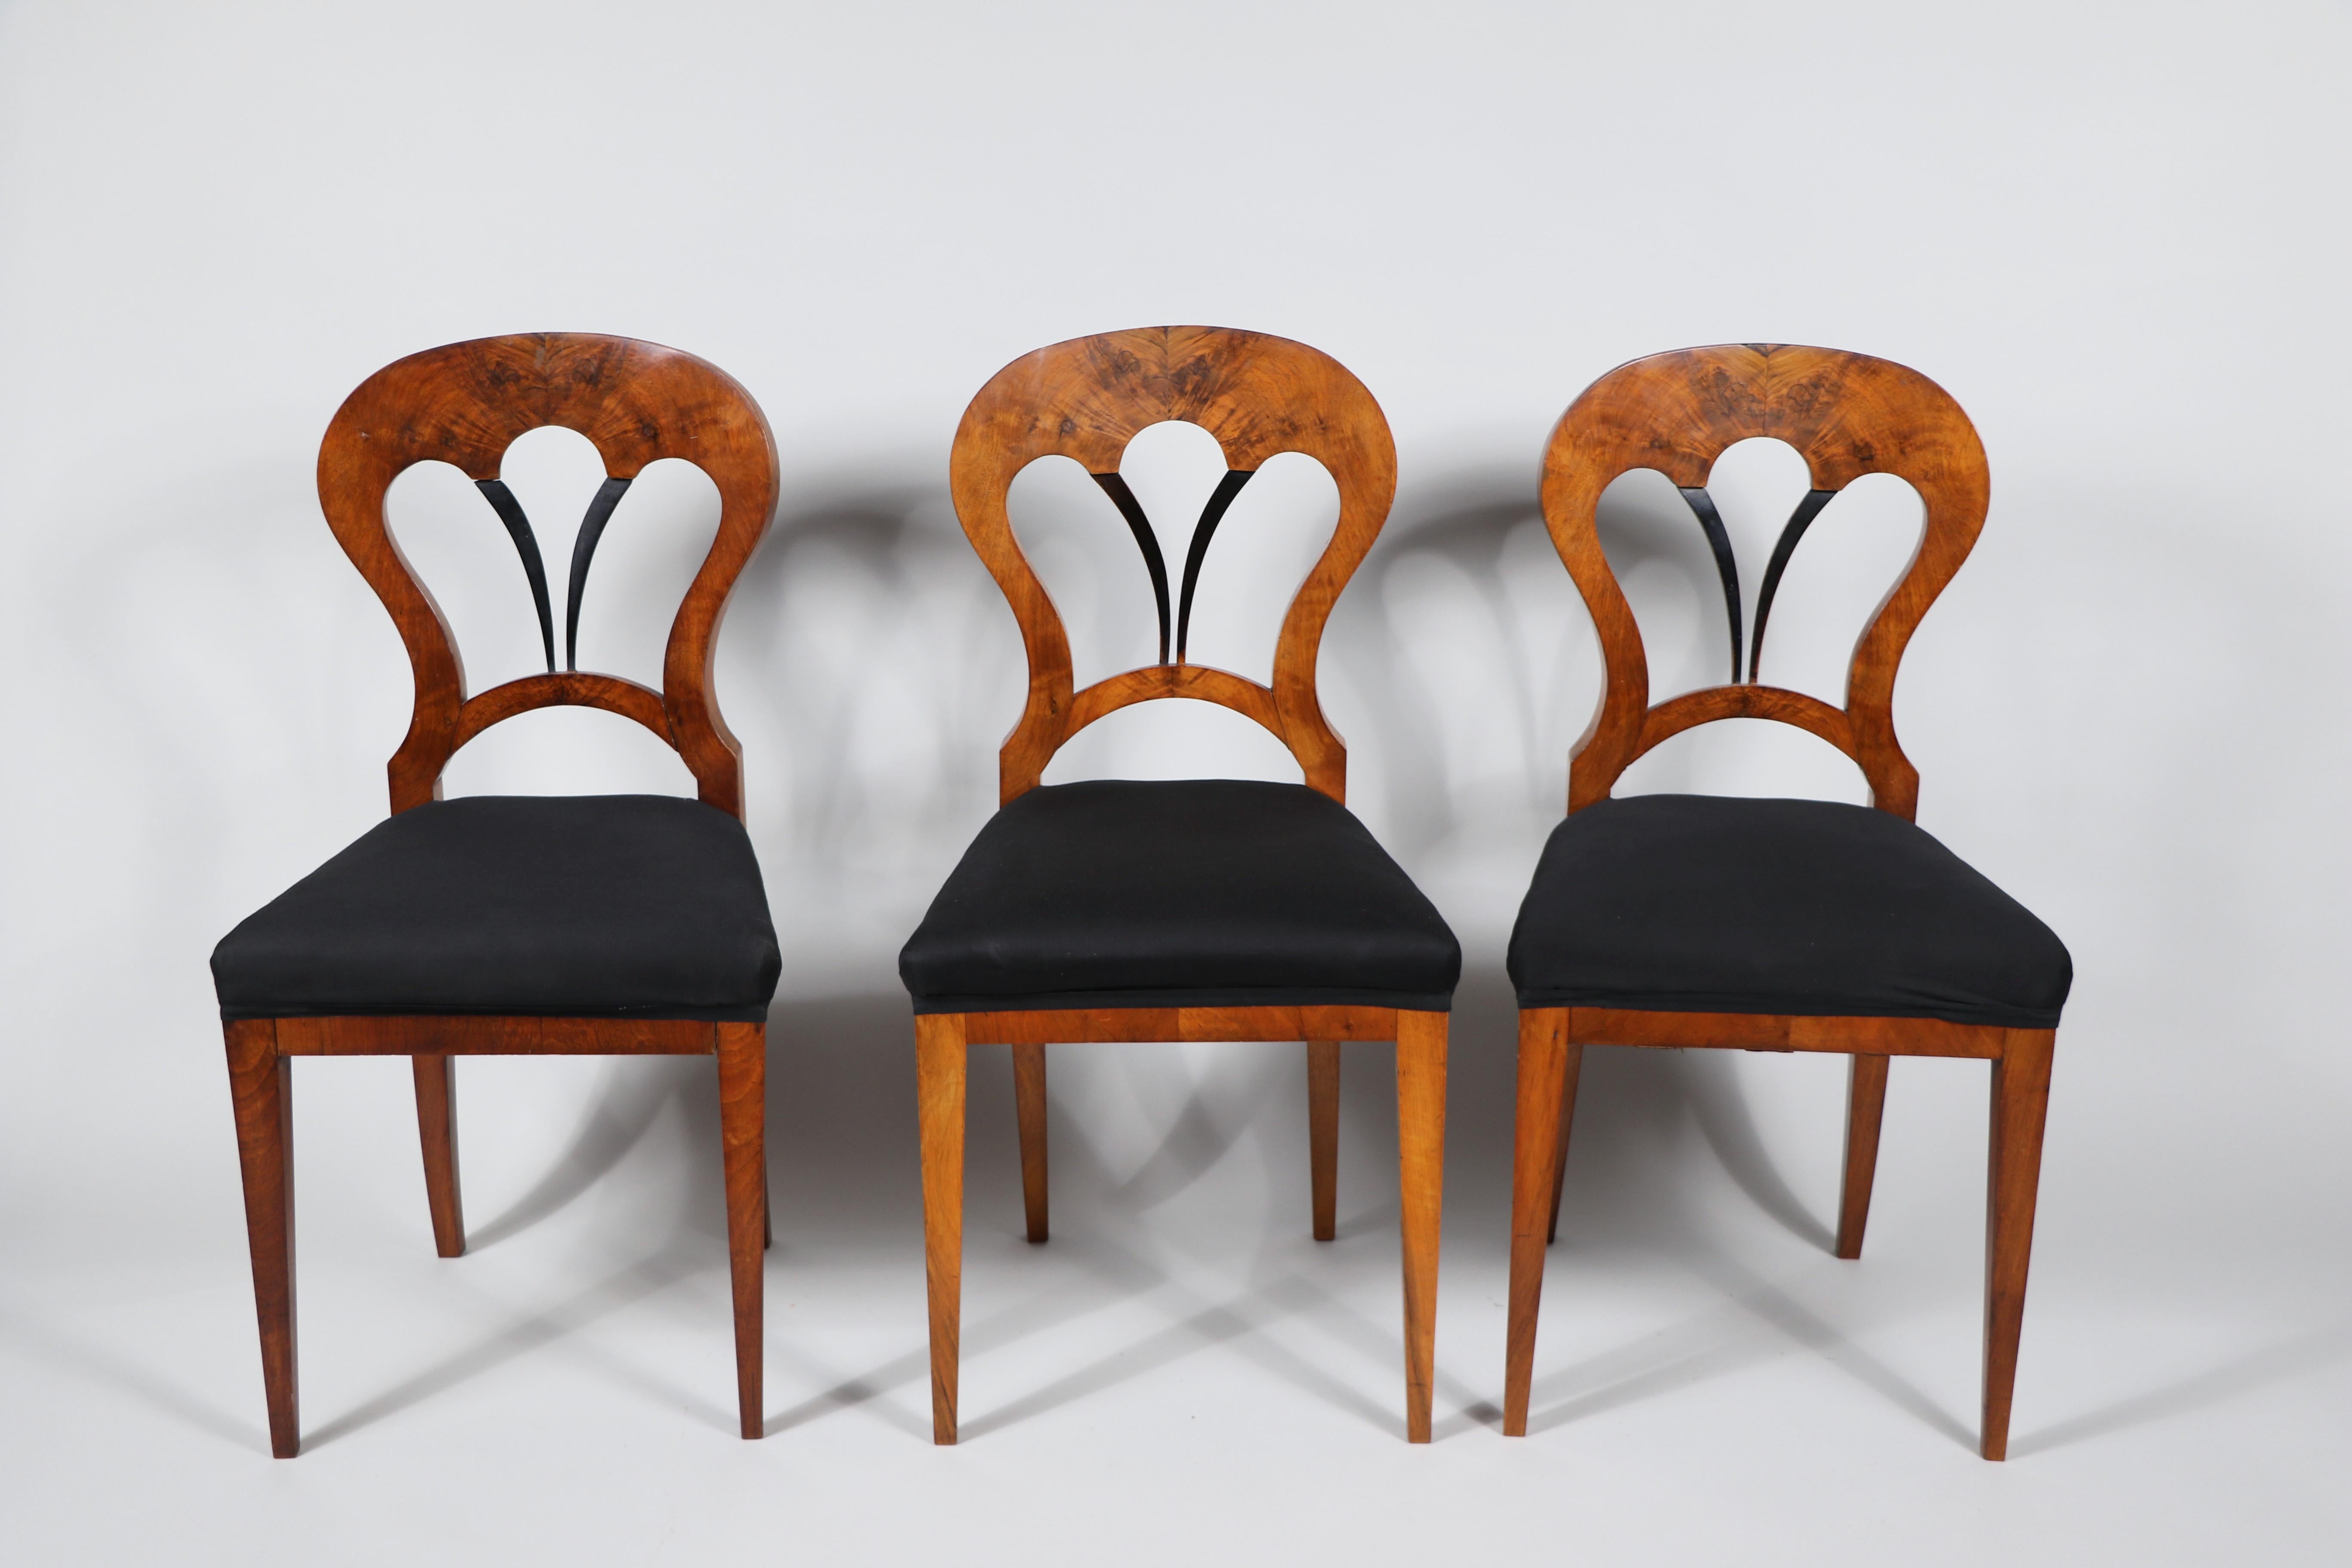 Bonjour,
Ce bel ensemble de six chaises viennoises Biedermeier en noyer datant d'environ 1825 est le meilleur exemple d'un Biedermeier viennois précoce qui reflète un design innovant et une qualité d'exécution exceptionnelle.

Les pièces du